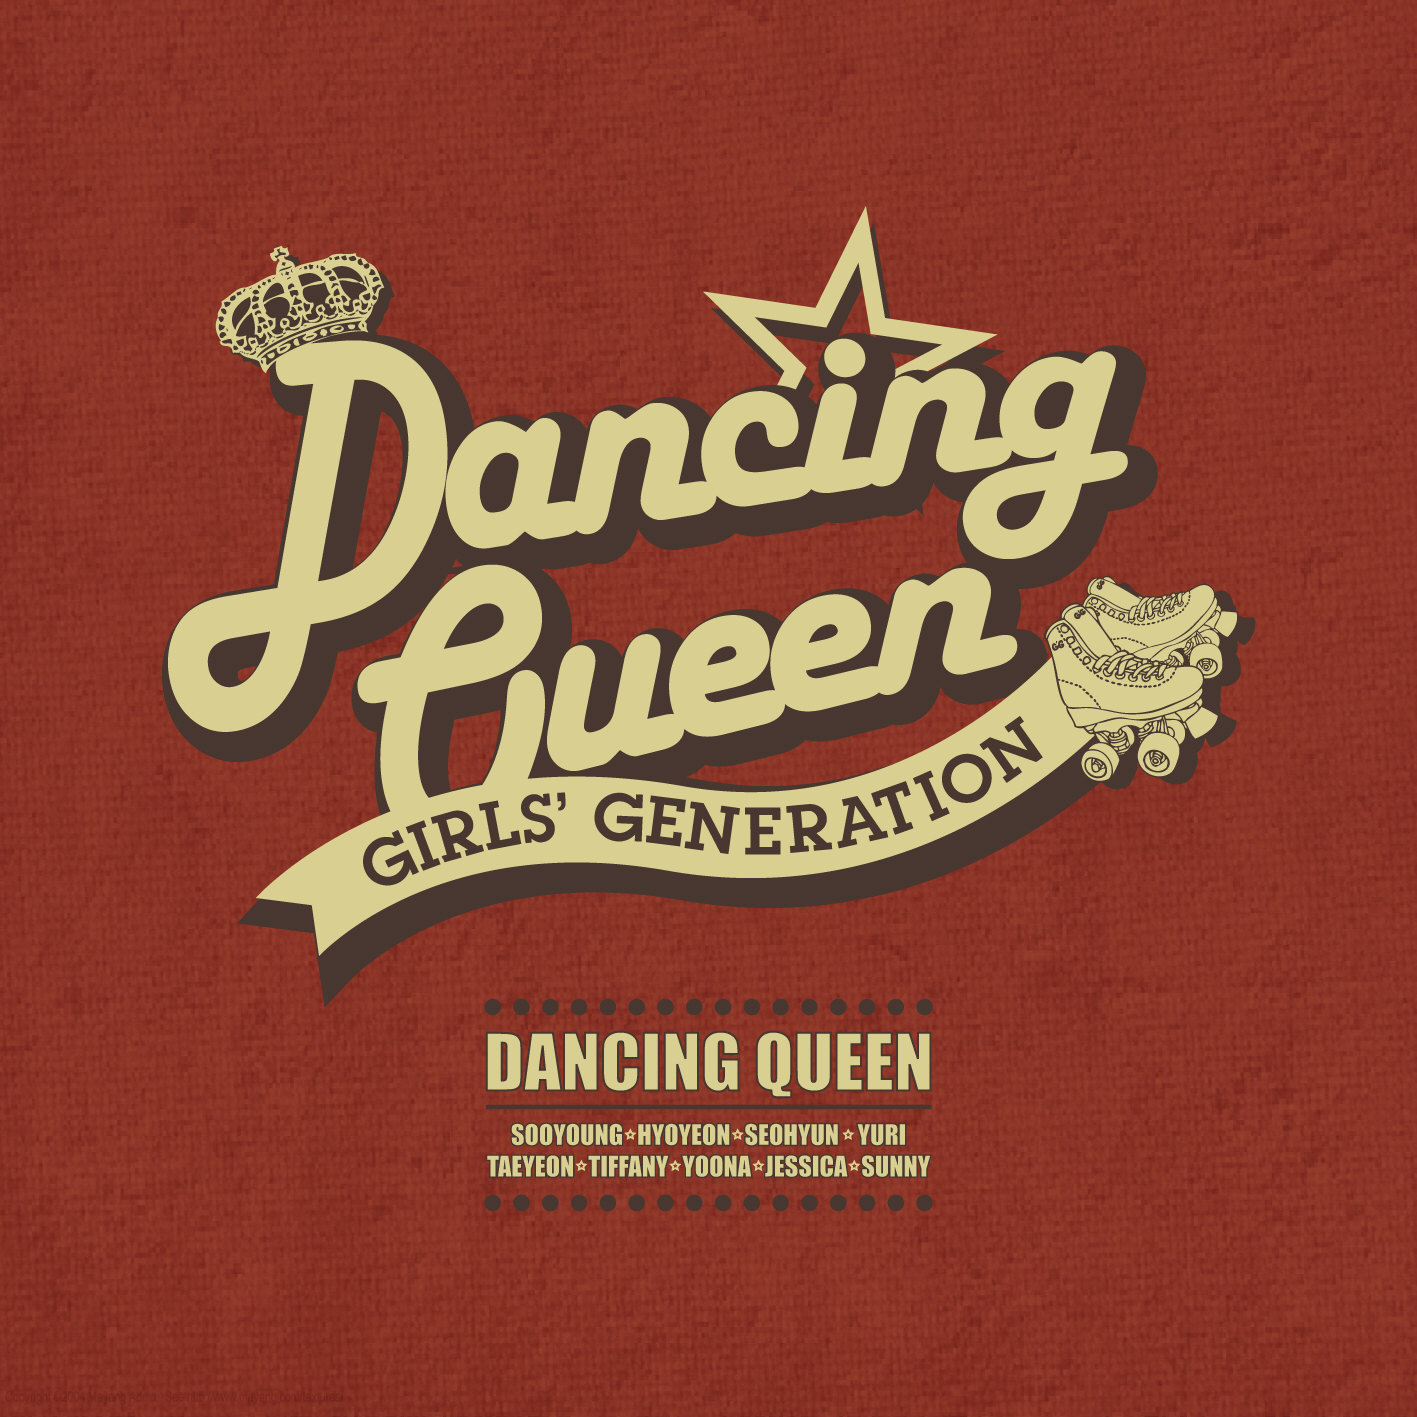 Dancing Queen (2012 film) - Wikipedia